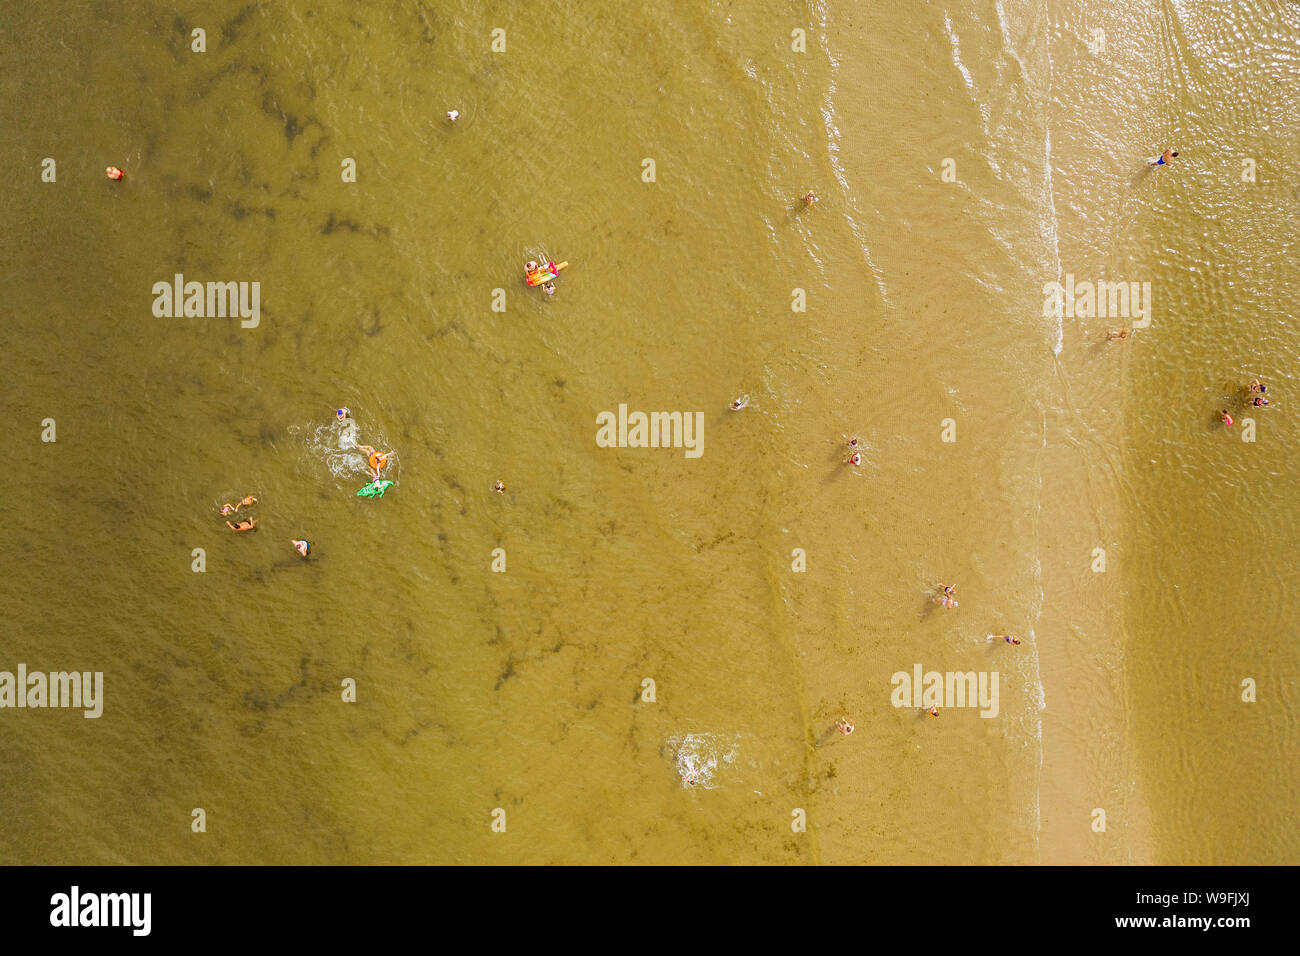 Antenne drone Fotografie von der Masse der Menschen am Strand. Sandstrand an der Ostsee Küste, Norden Polens. Stockfoto